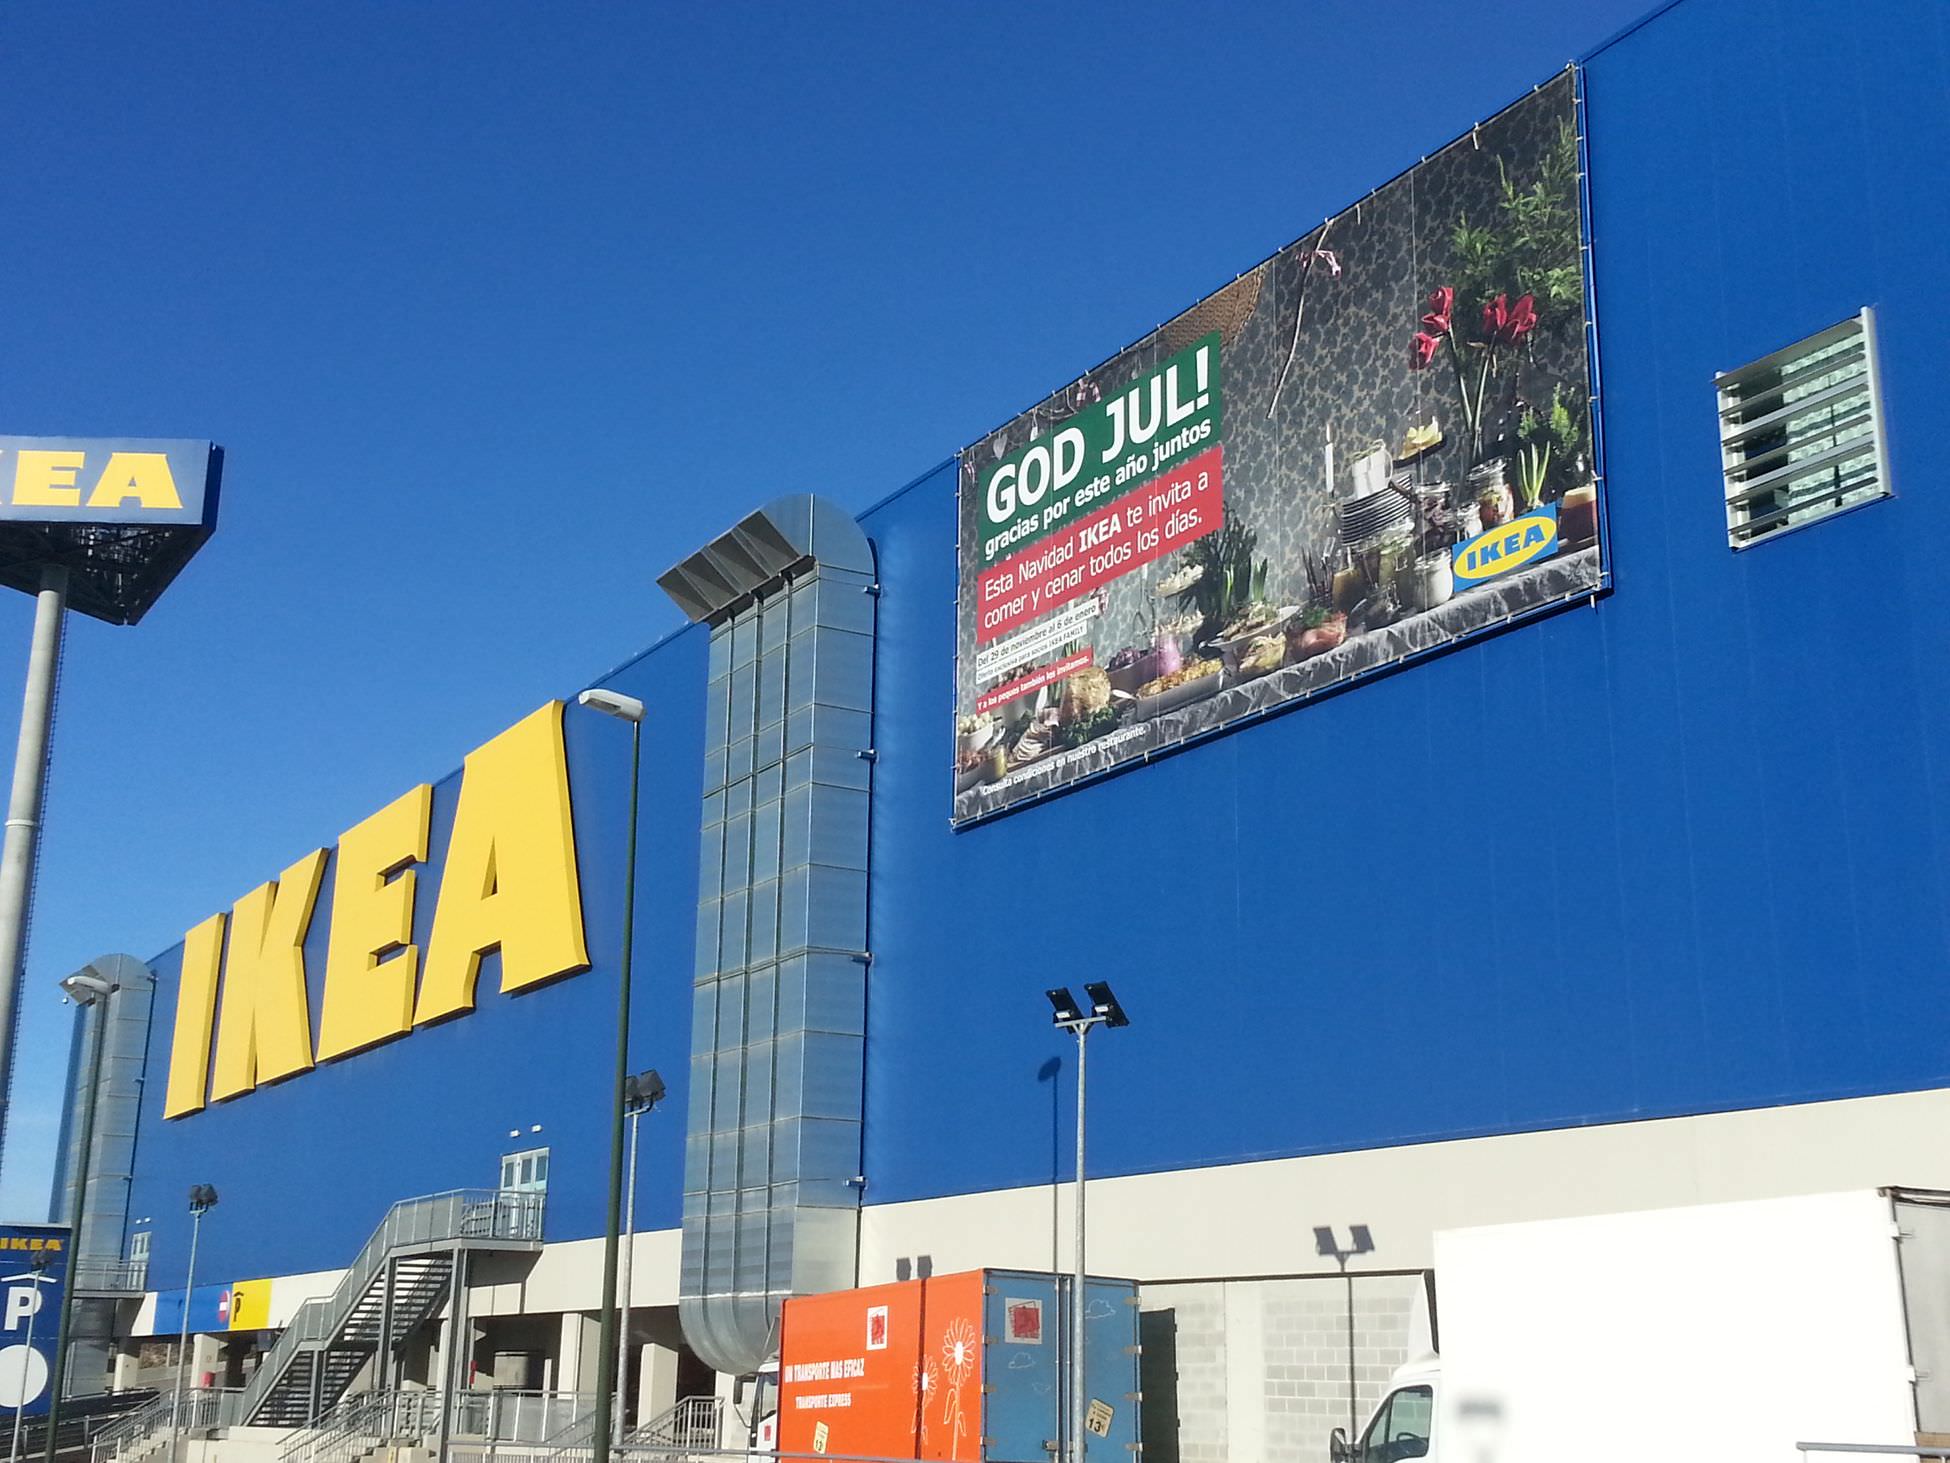 Valla publicitaria Ikea